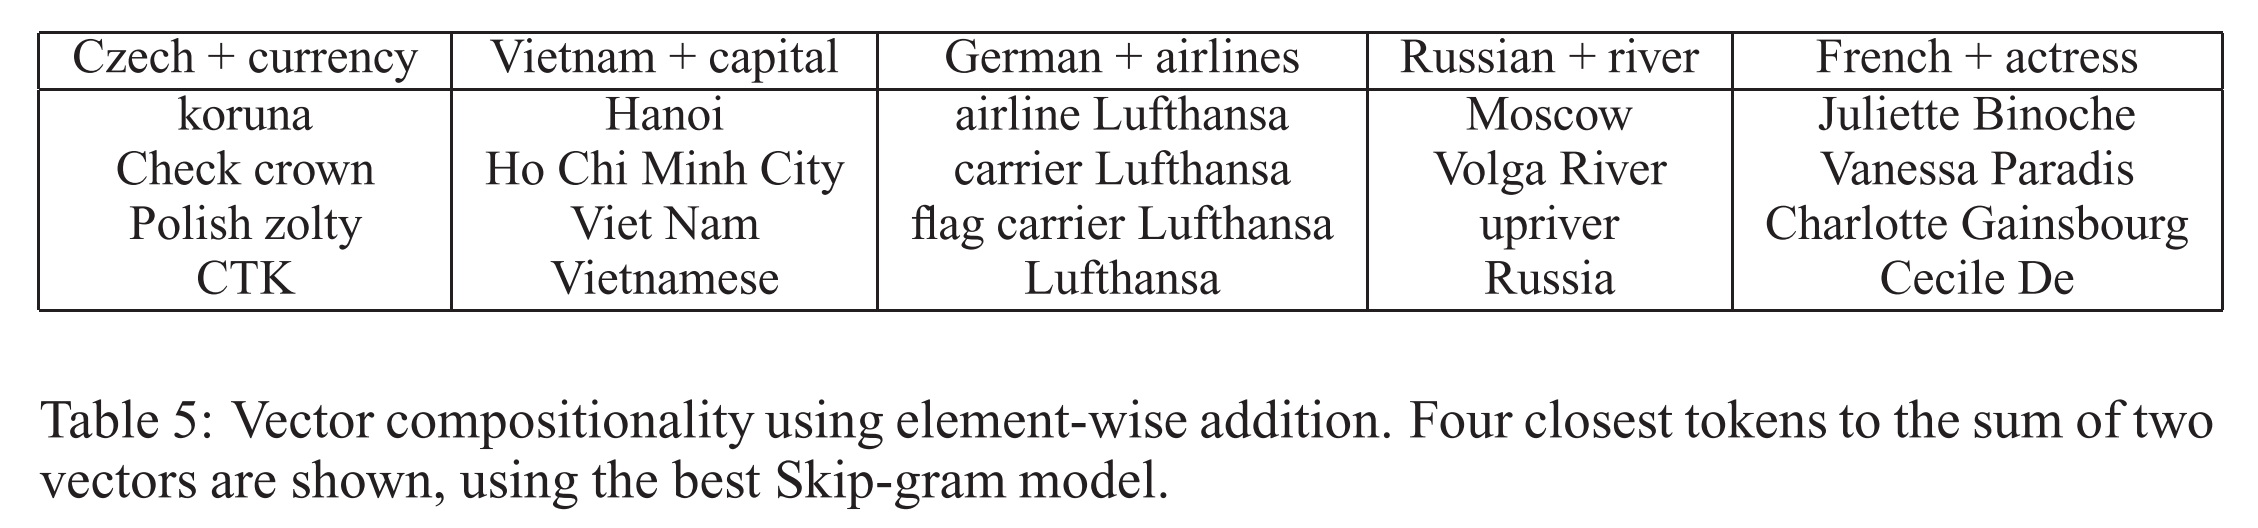 word2vec German airlines